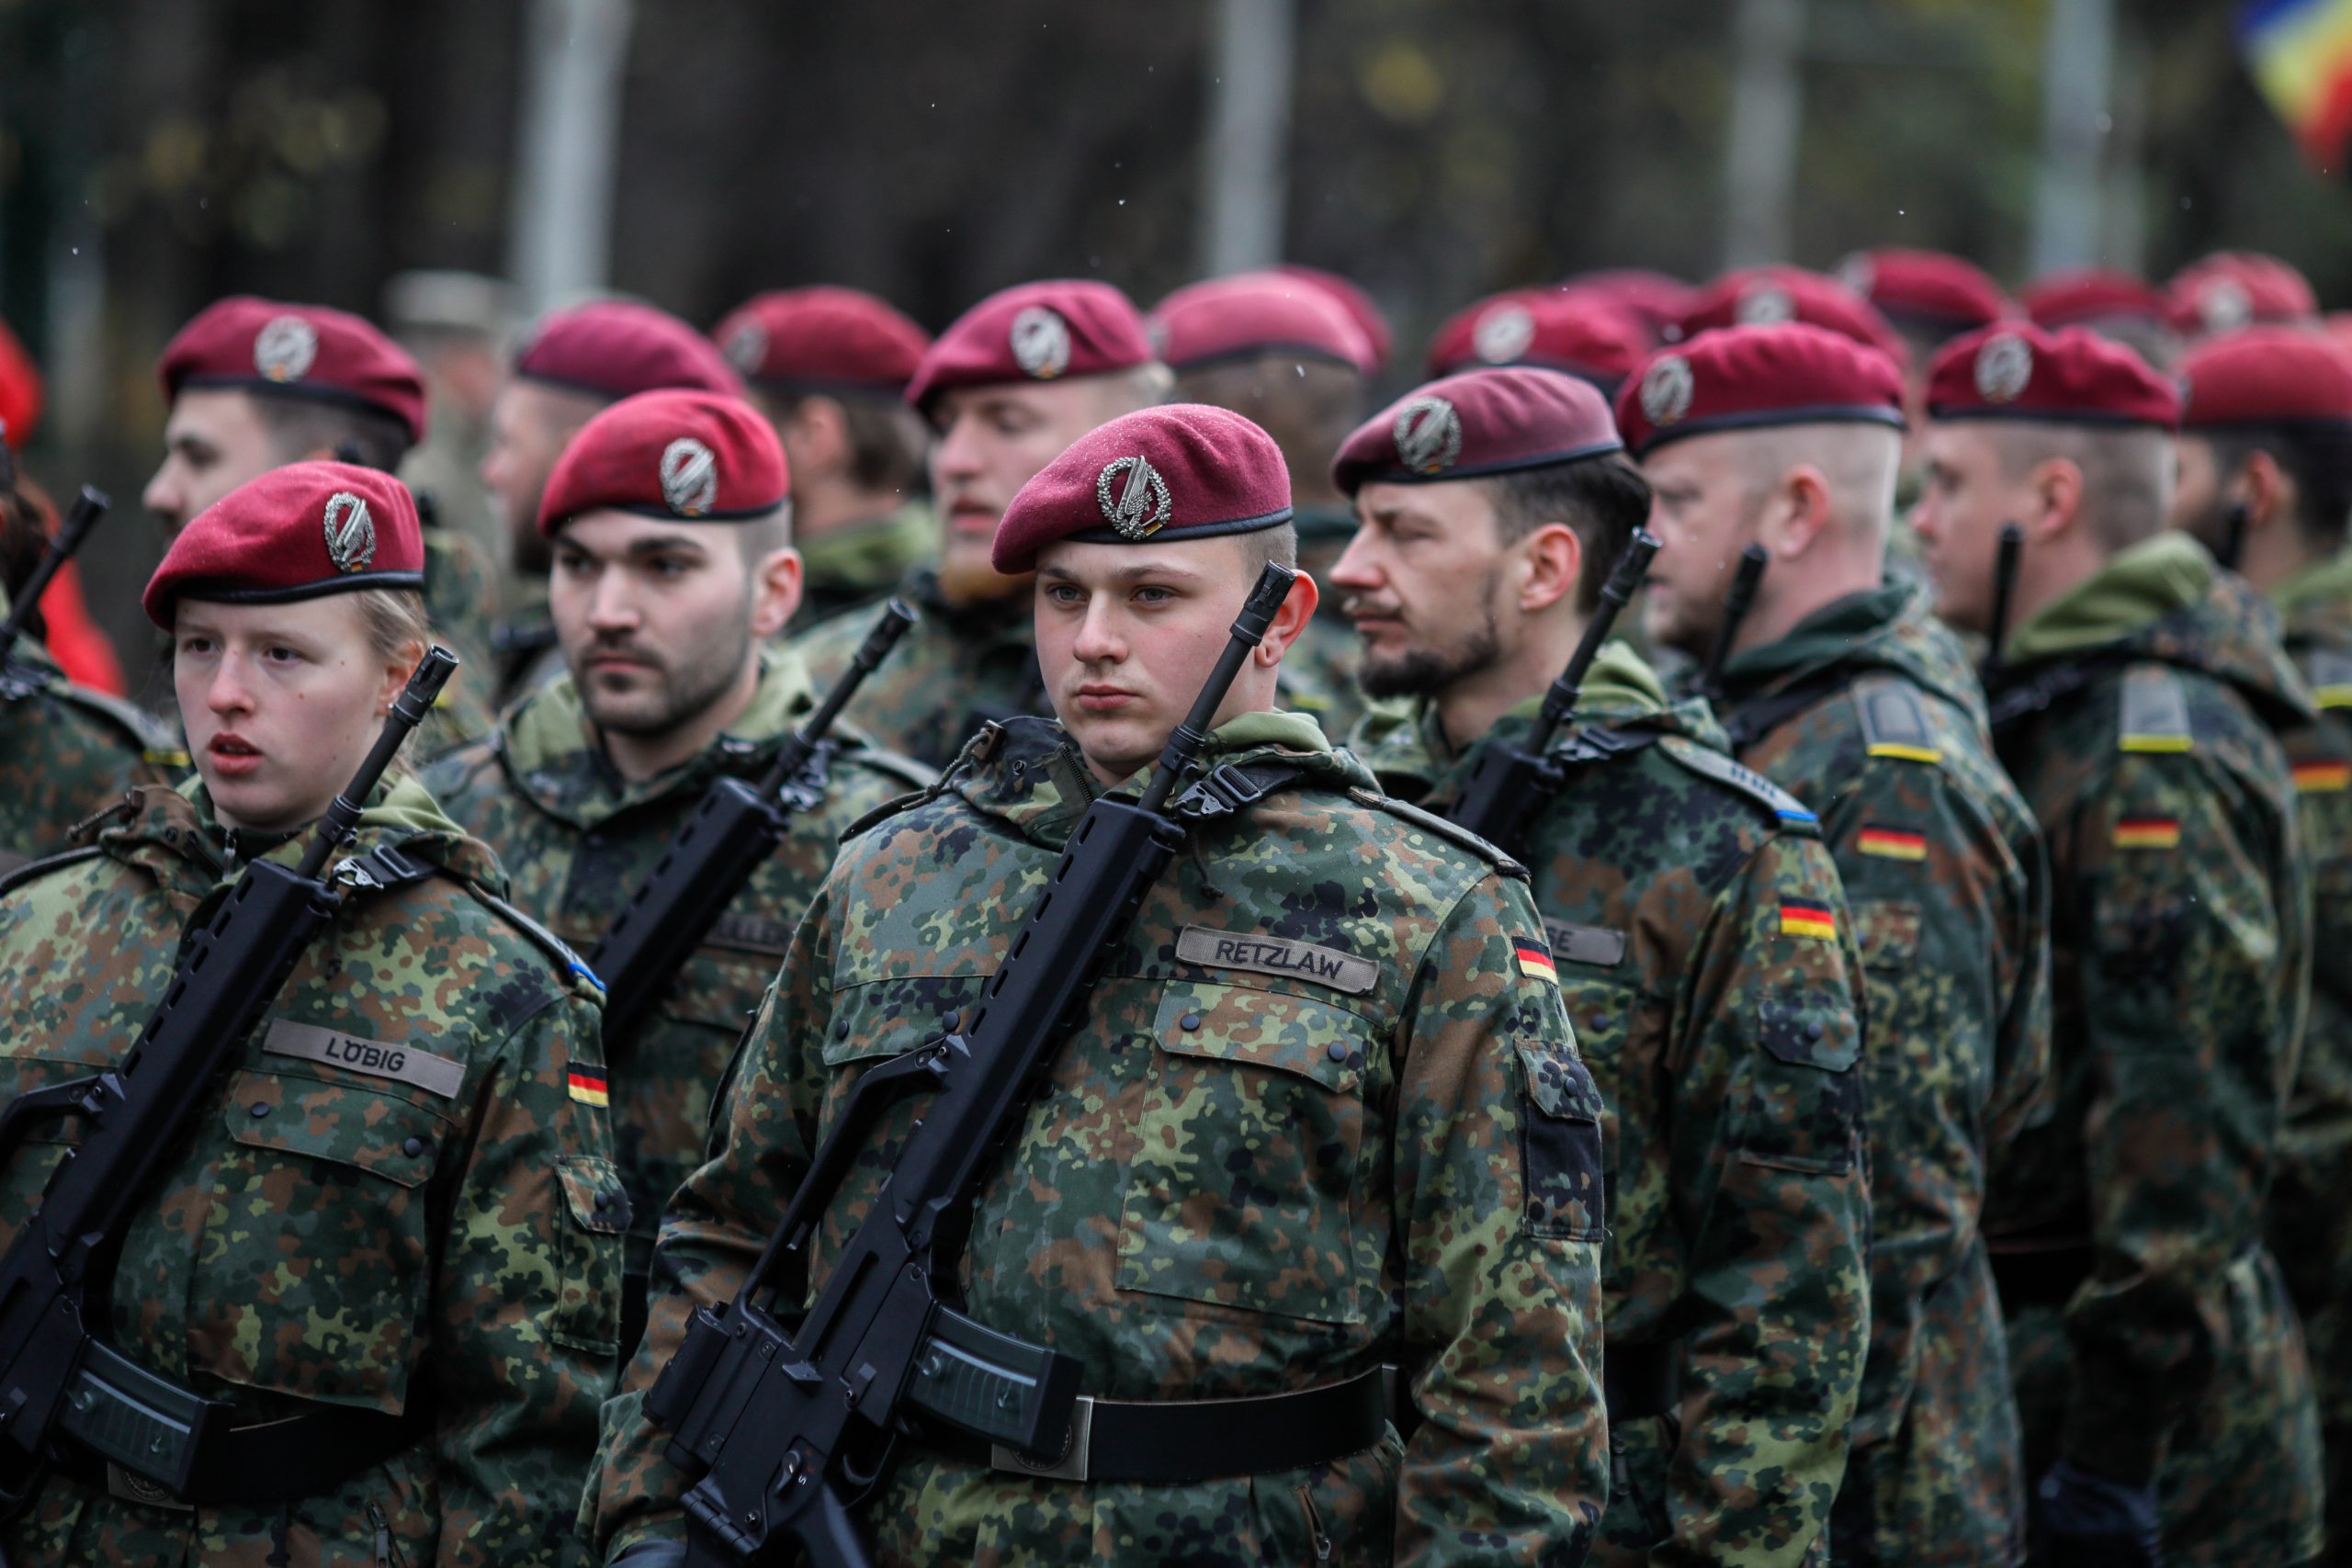 100 Milliarden Euro für die Bundeswehr: Nein zur Aufrüstung!